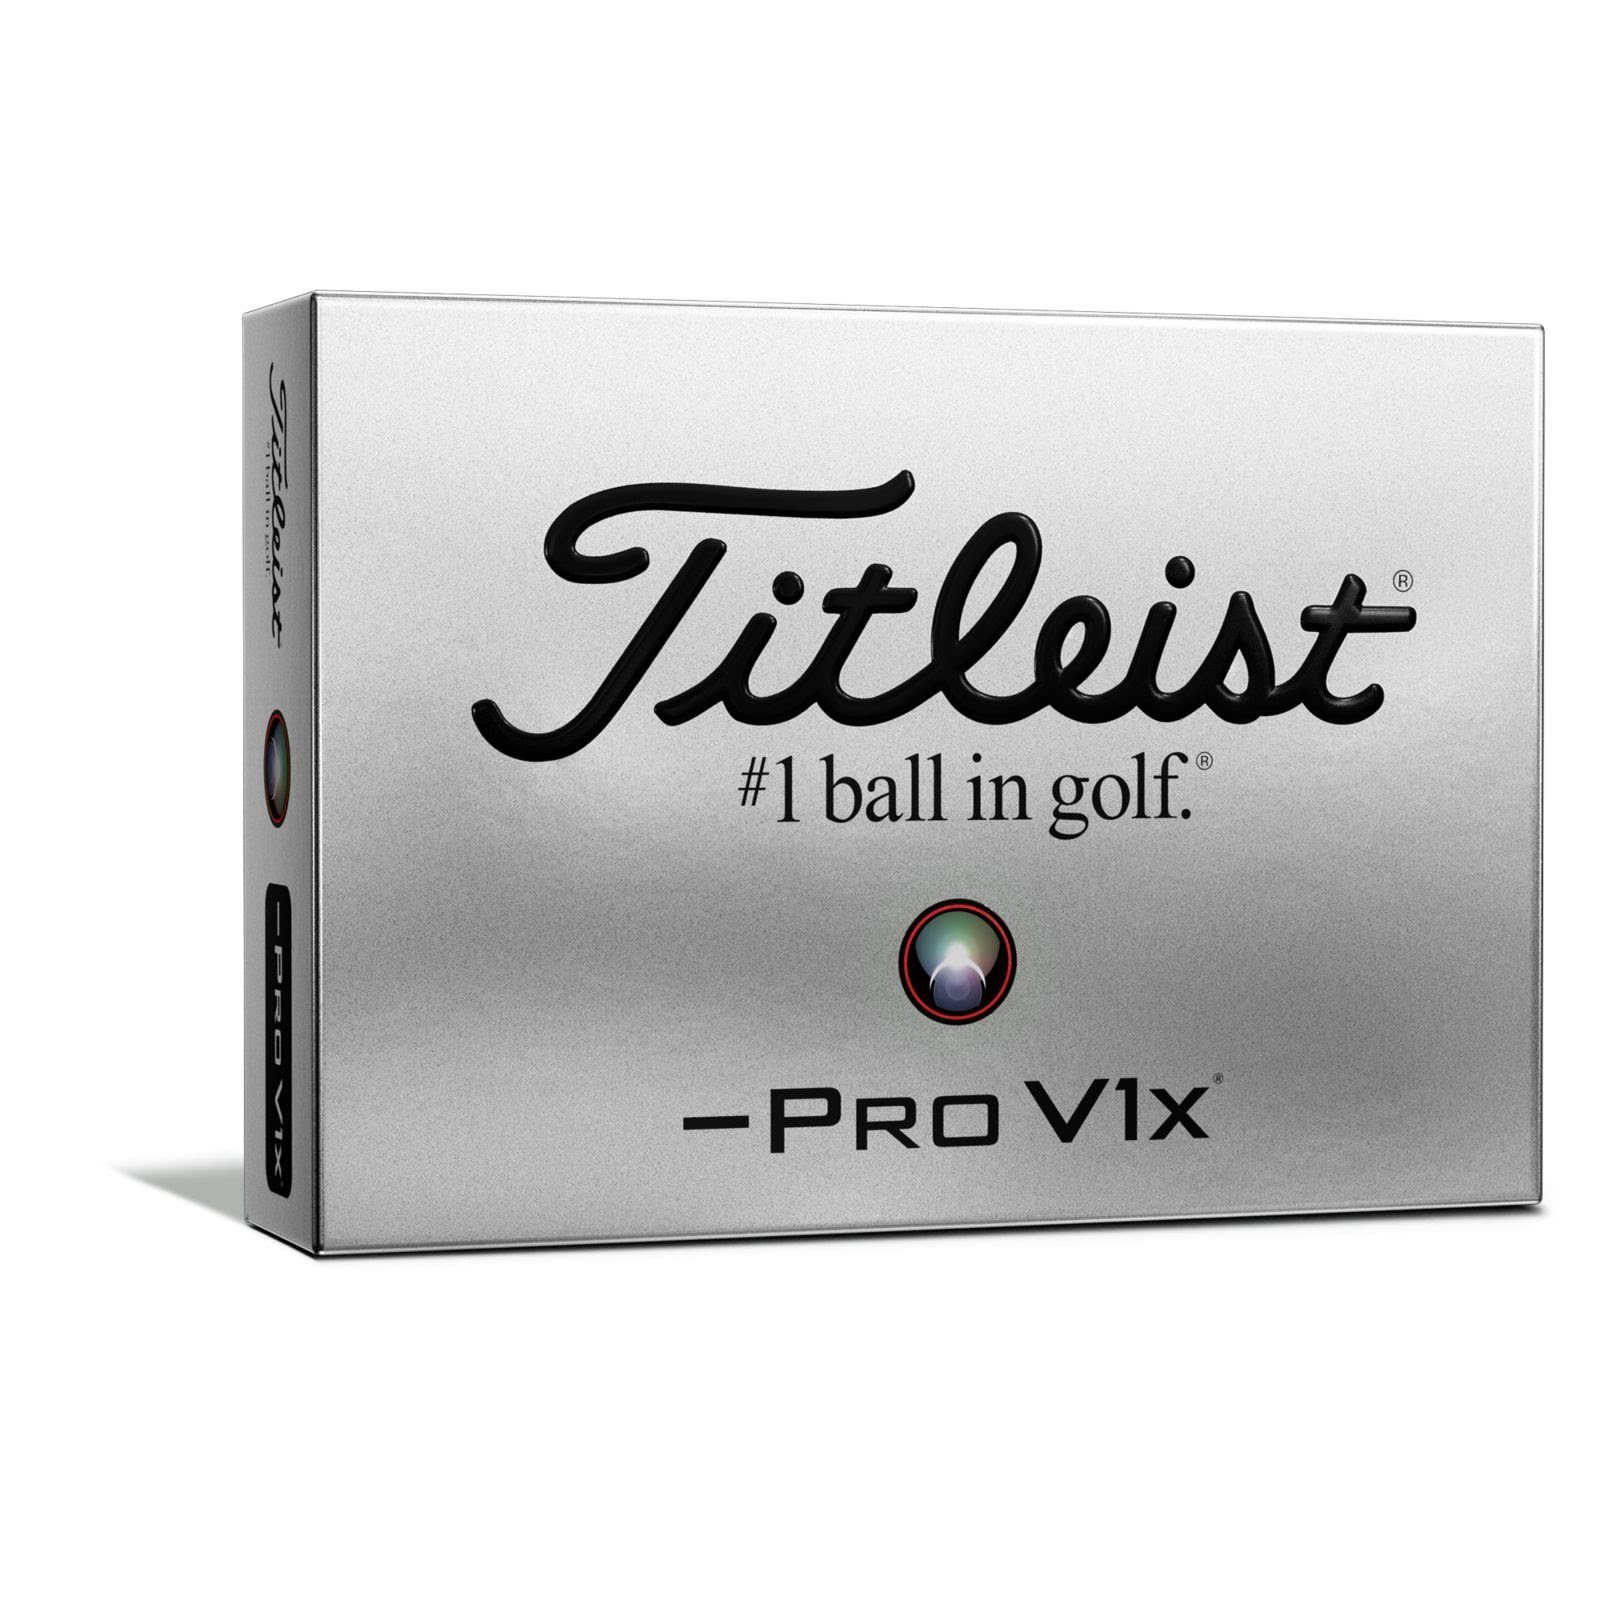 Titleist Golfball »Titleist Pro V1x 3-piece Golfbälle 12 Stück Left«, Etwas  härtere gegossene Urethan-Elastomer-Schale,Ionomer-Mantelschicht erhöht die  Ballgeschwindigkeit und reduziert den Spin